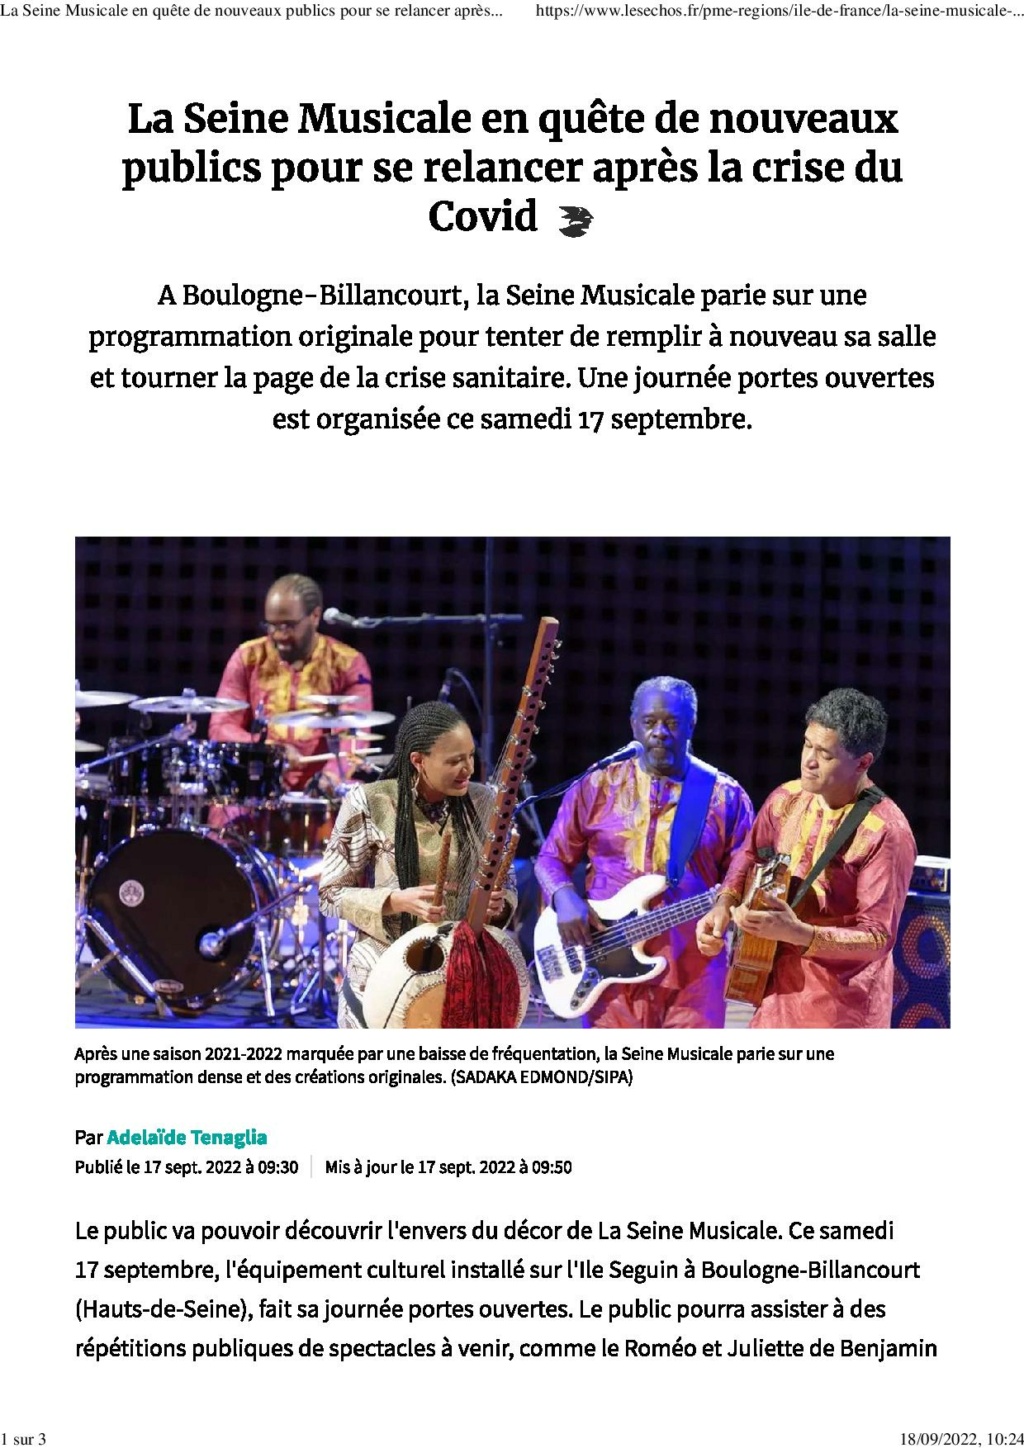 HautsdeSeine - La Seine Musicale de l'île Seguin - Page 2 La_sei11